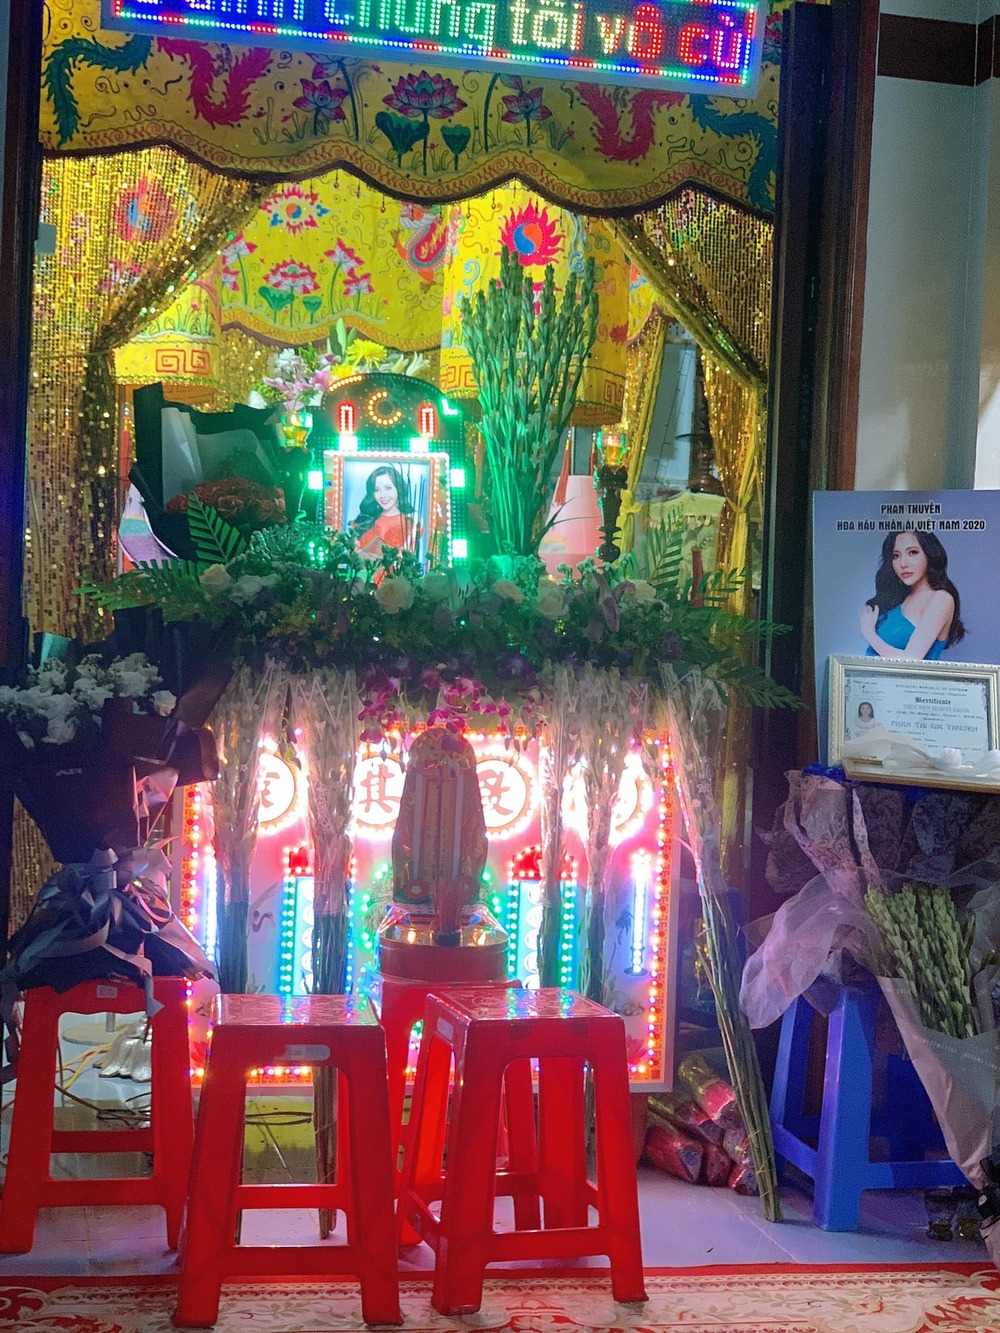  
Một số hình ảnh tại tang lễ của người đẹp Phan Thuyền (Ảnh: FBNV). - Tin sao Viet - Tin tuc sao Viet - Scandal sao Viet - Tin tuc cua Sao - Tin cua Sao